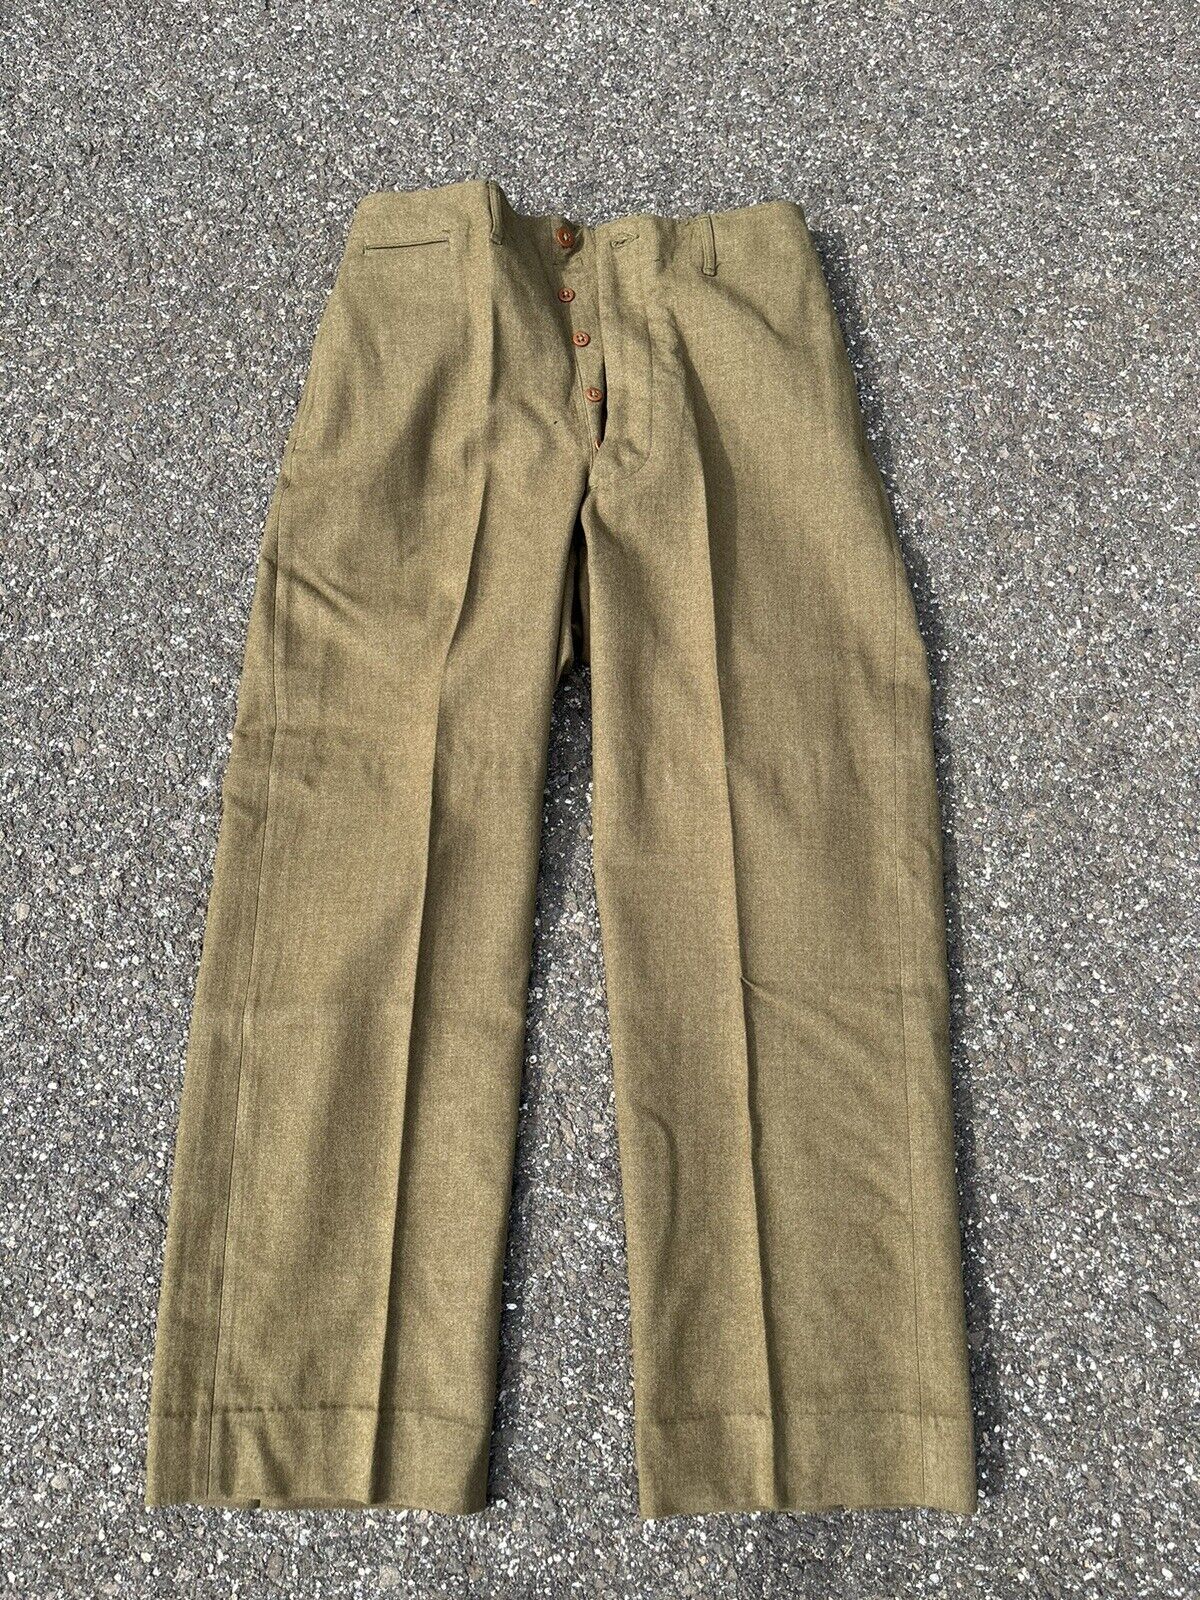 Vtg WWII US M-1937 Wool Field Trousers 1942 Date 30x 30 WW2 Pants